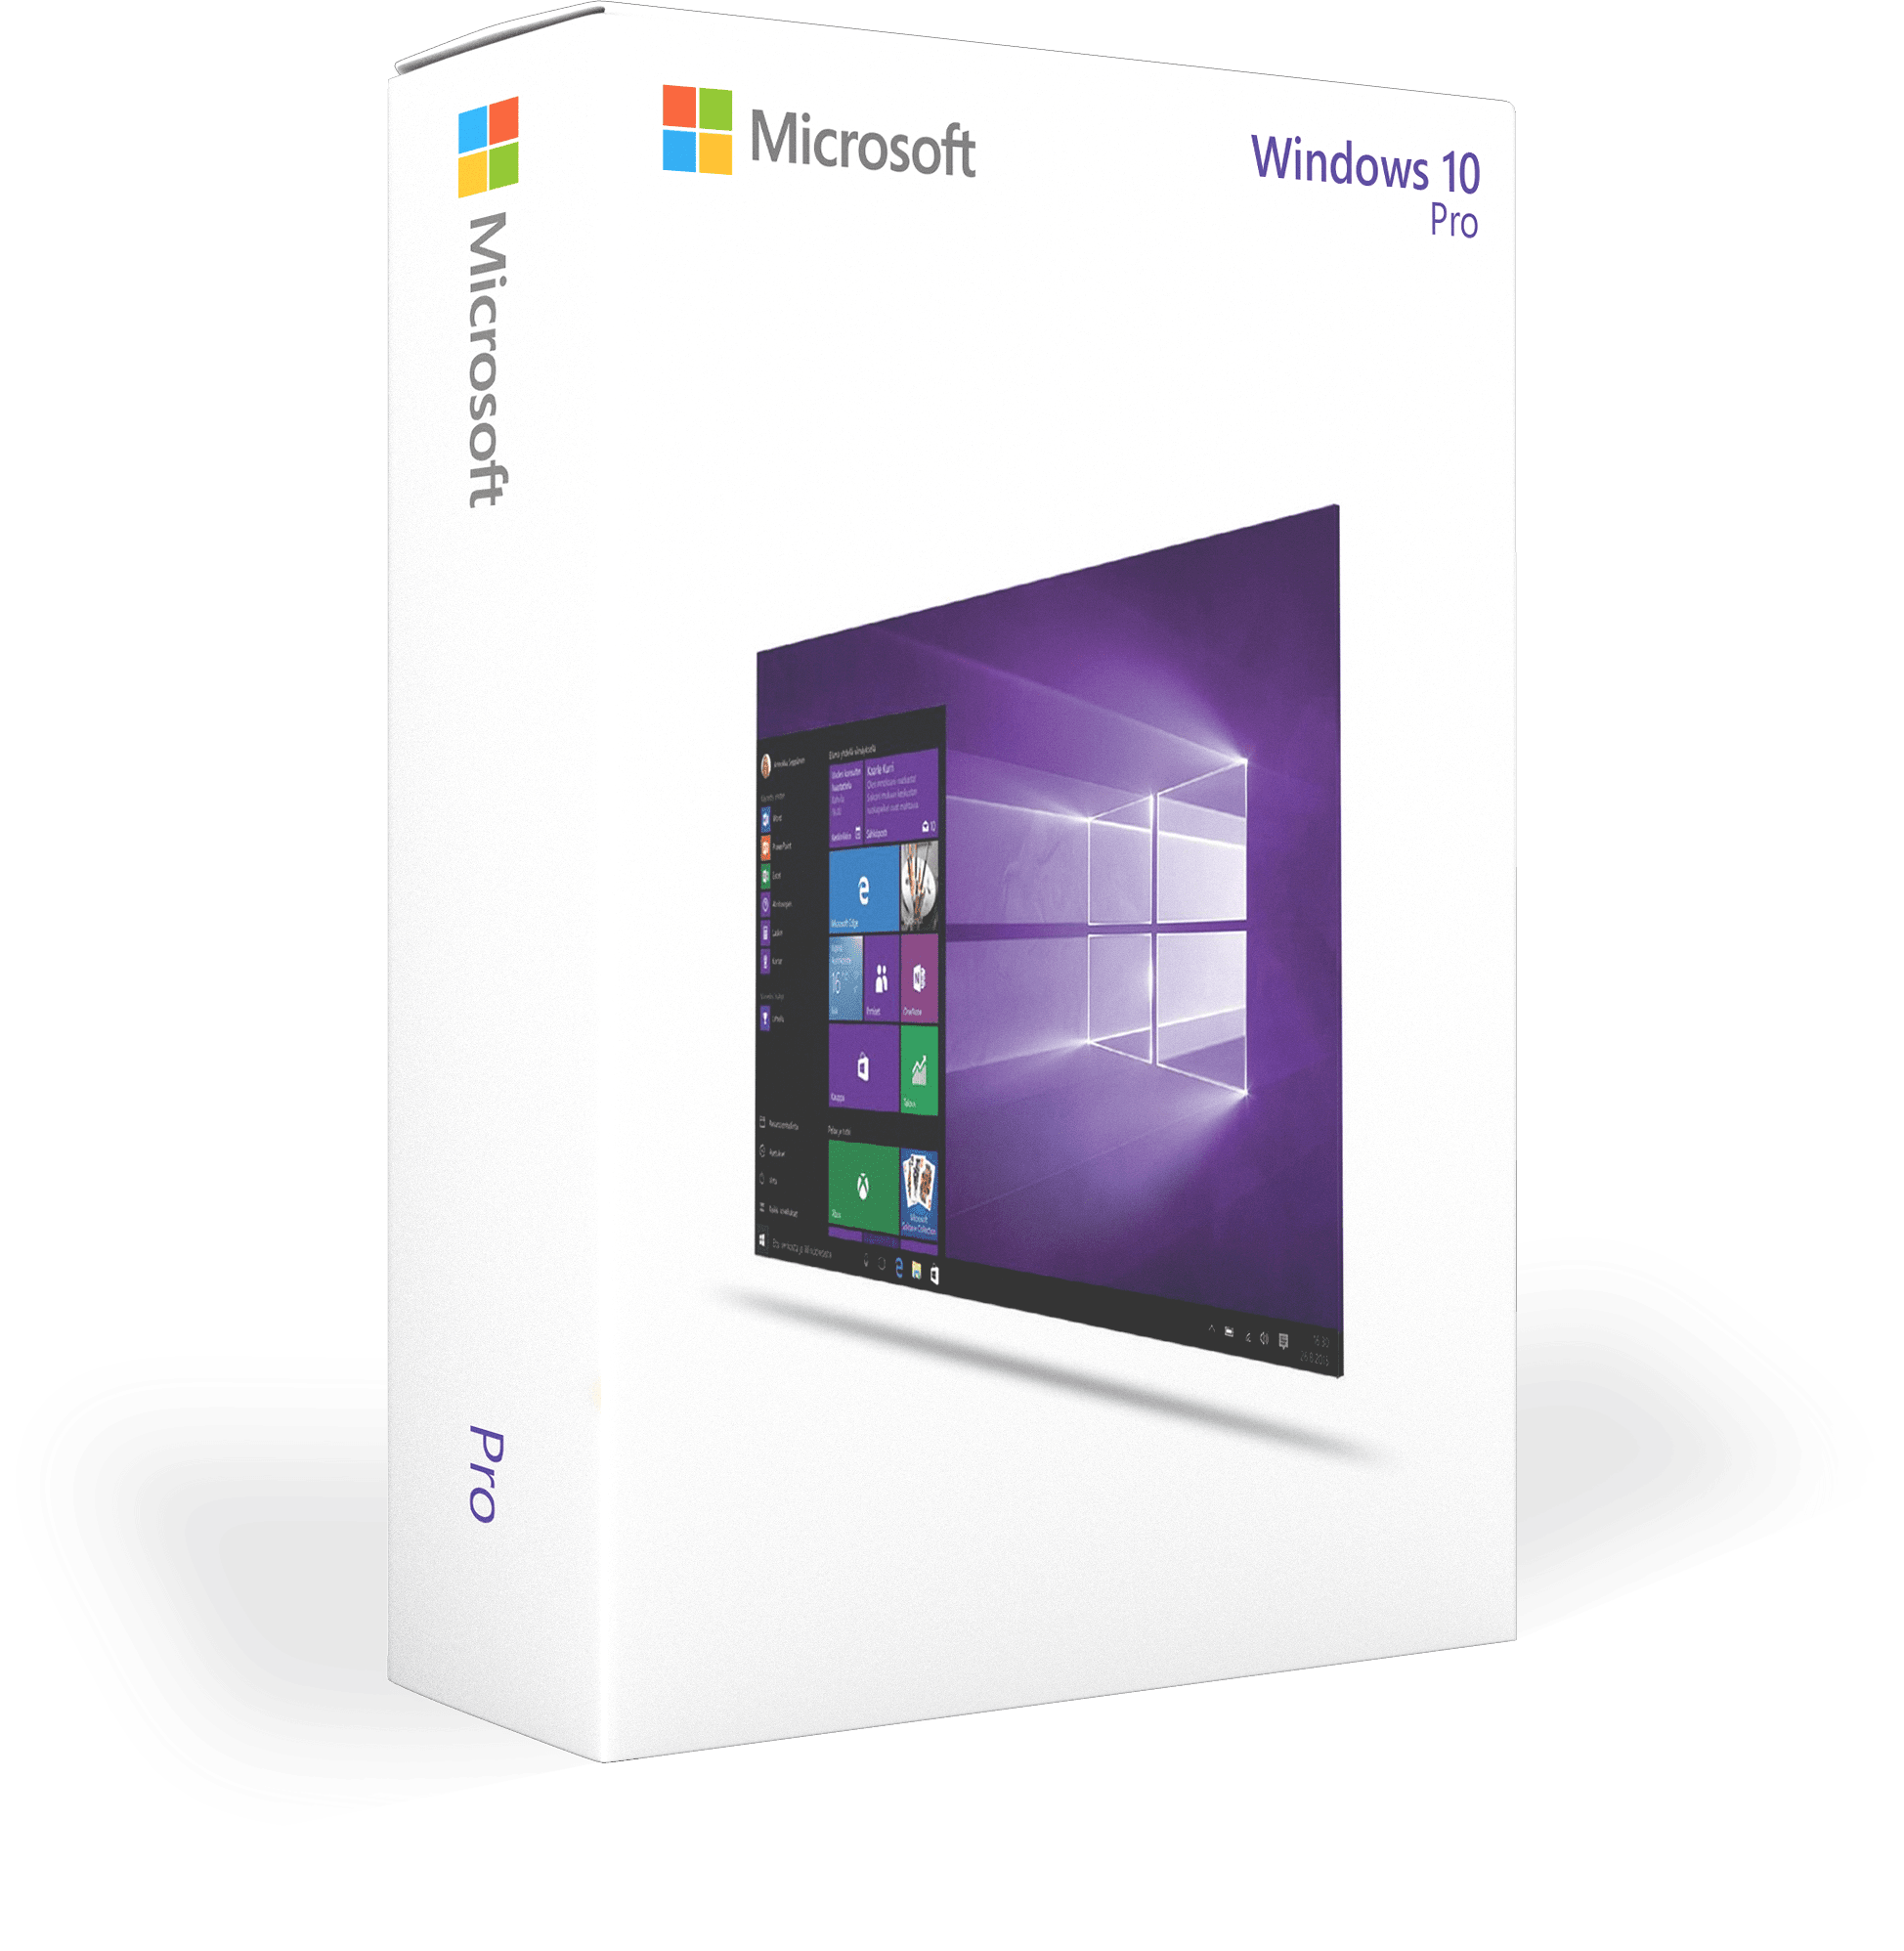 Viskeus schokkend leg uit Windows 10 pro licentie kopen? Productlicenties.nl!